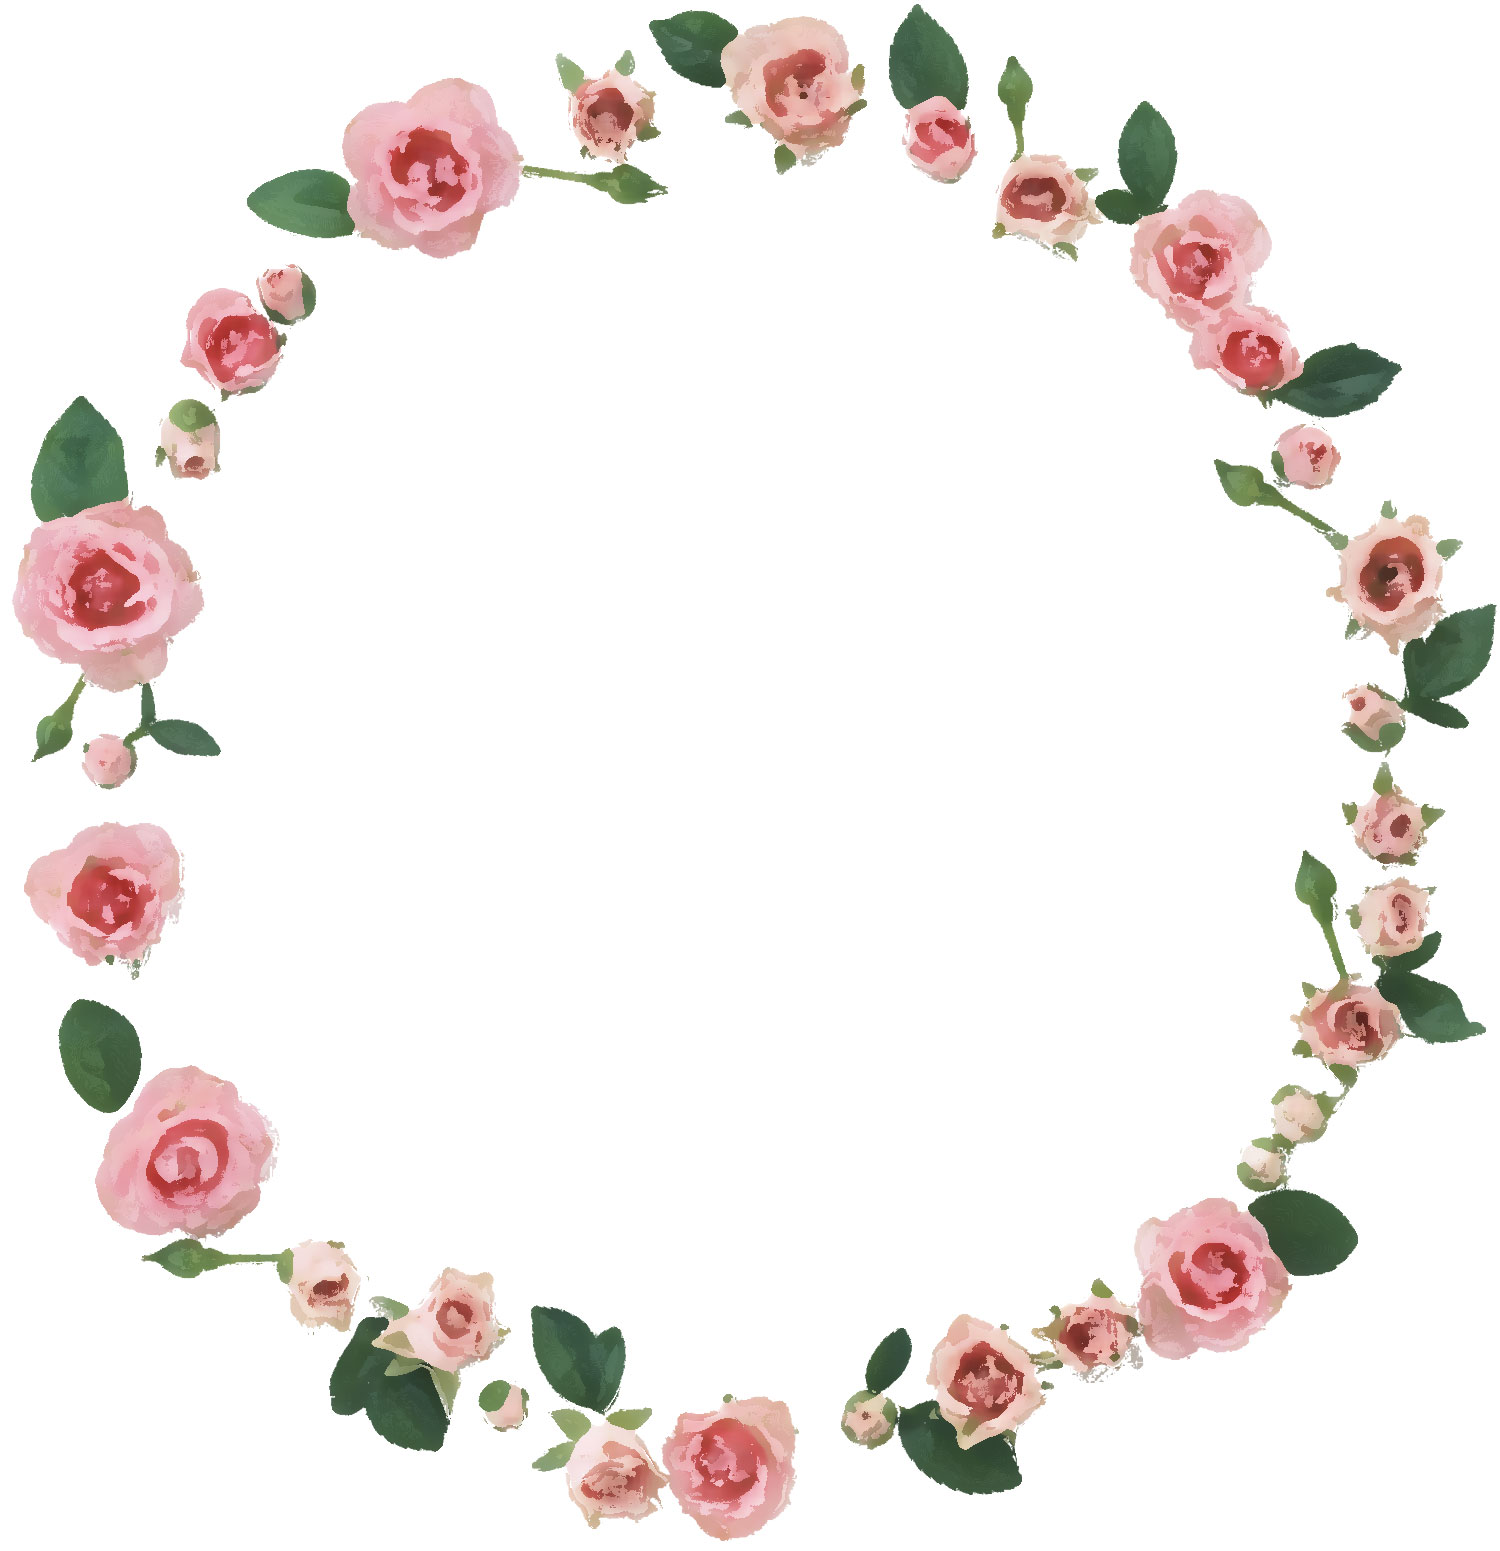 リアルな花のイラスト フリー素材 フレーム枠no 1194 ピンクのバラ 葉 輪